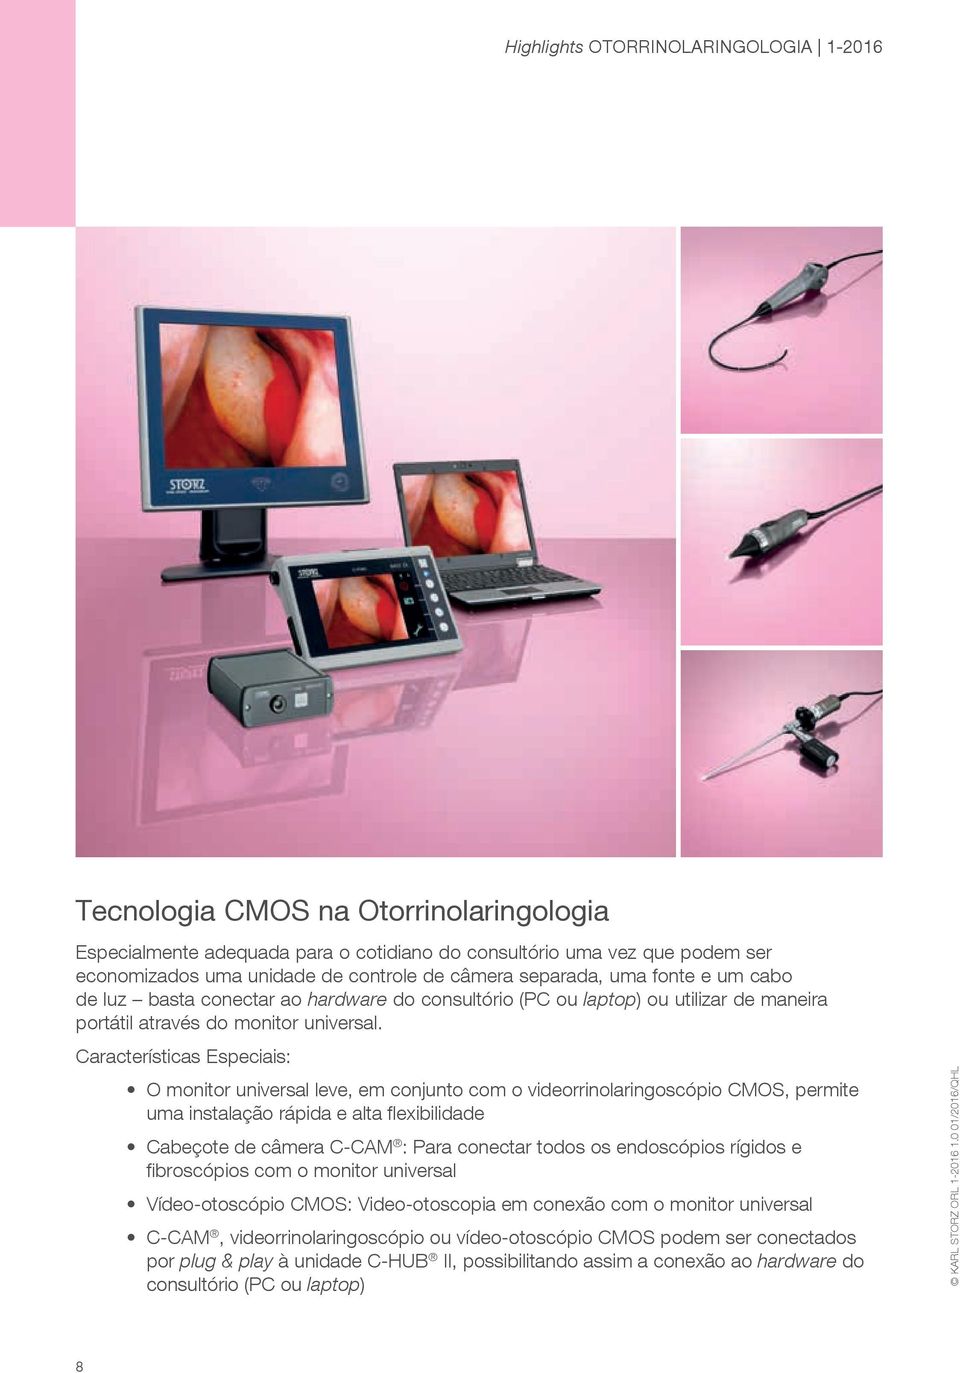 Características Especiais: O monitor universal leve, em conjunto com o videorrinolaringoscópio CMOS, permite uma instalação rápida e alta flexibilidade Cabeçote de câmera C-CAM : Para conectar todos